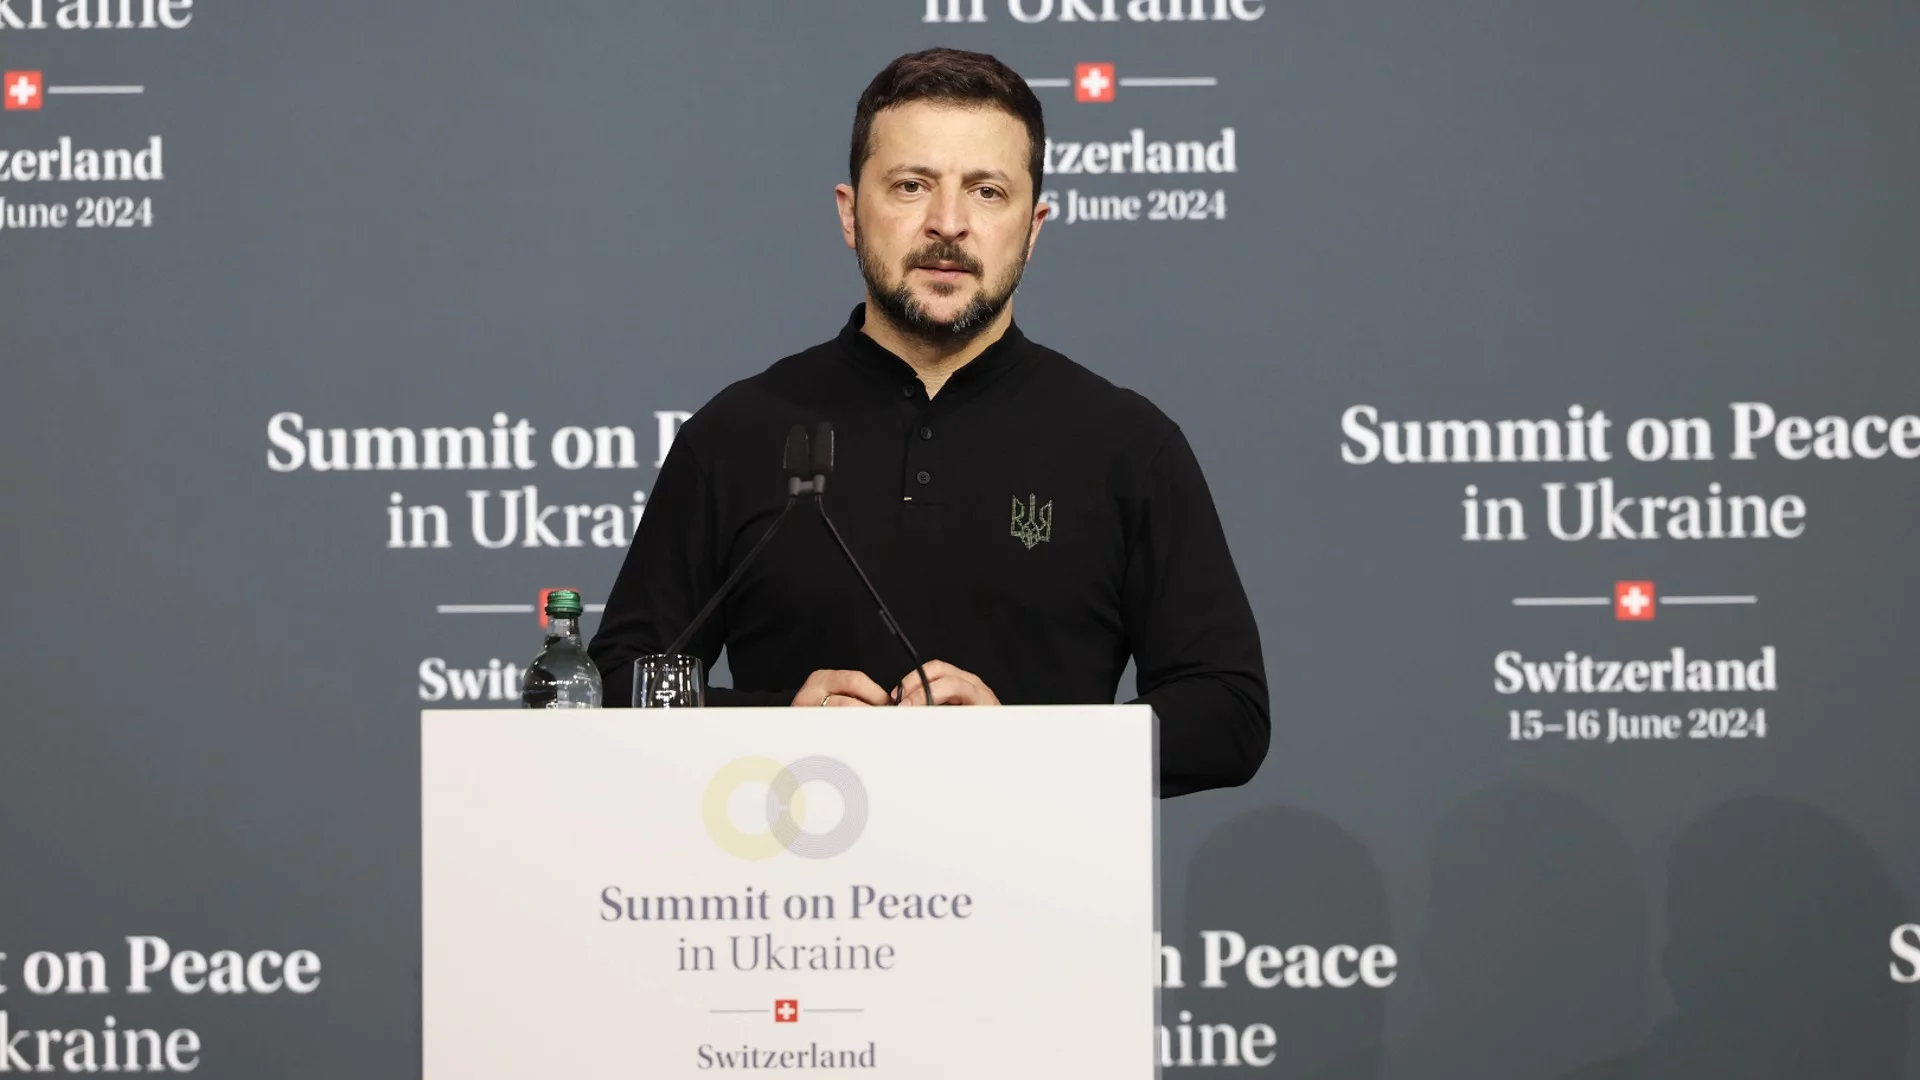 Зеленски за срещата на върха за мир: Това е исторически успех за Украйна  (ВИДЕО)